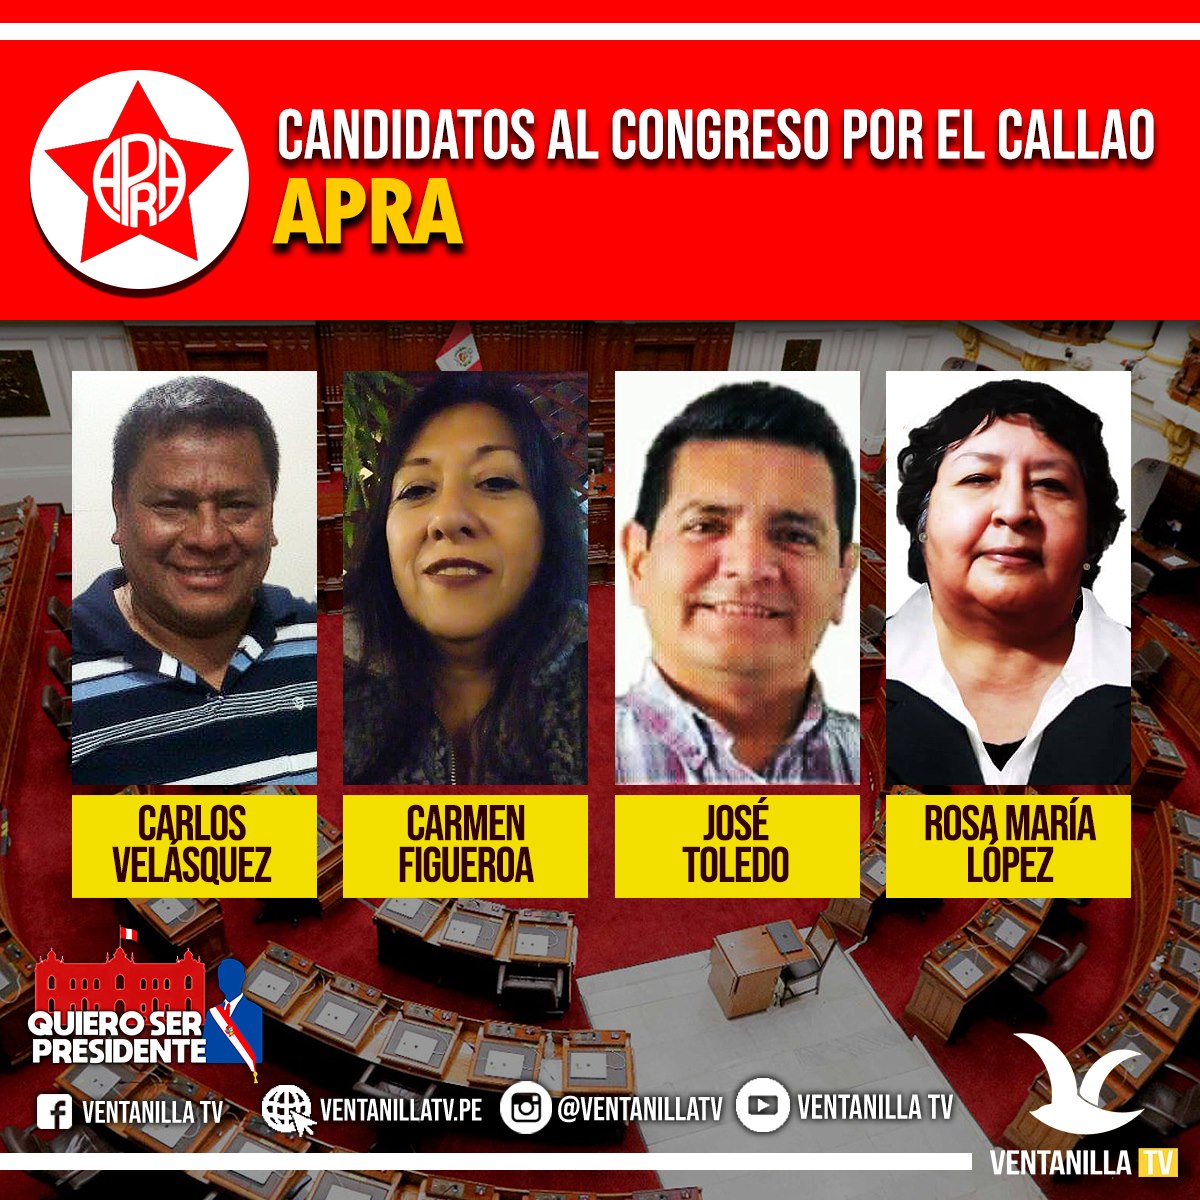 Conozca A Los Candidatos Al Congreso De La RepÚblica 2021 Ventanilla Tv 6758